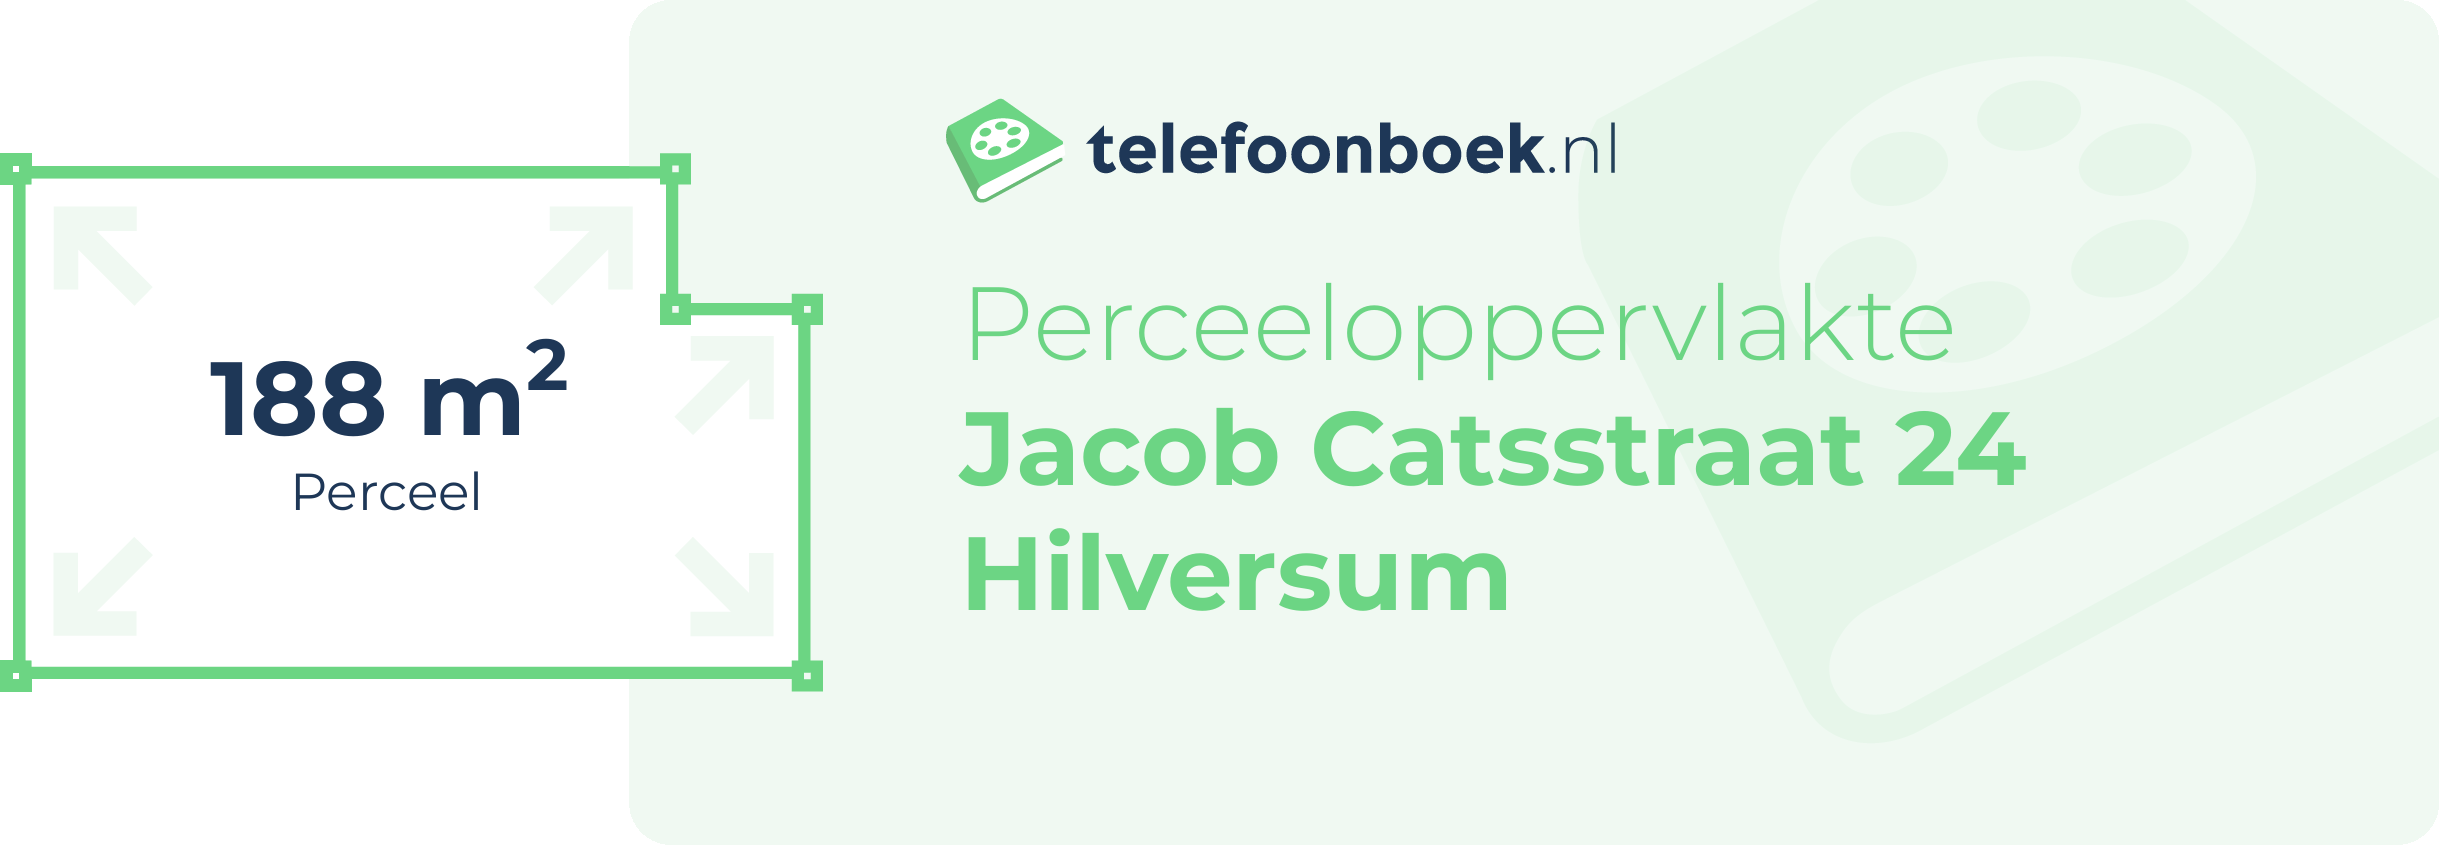 Perceeloppervlakte Jacob Catsstraat 24 Hilversum